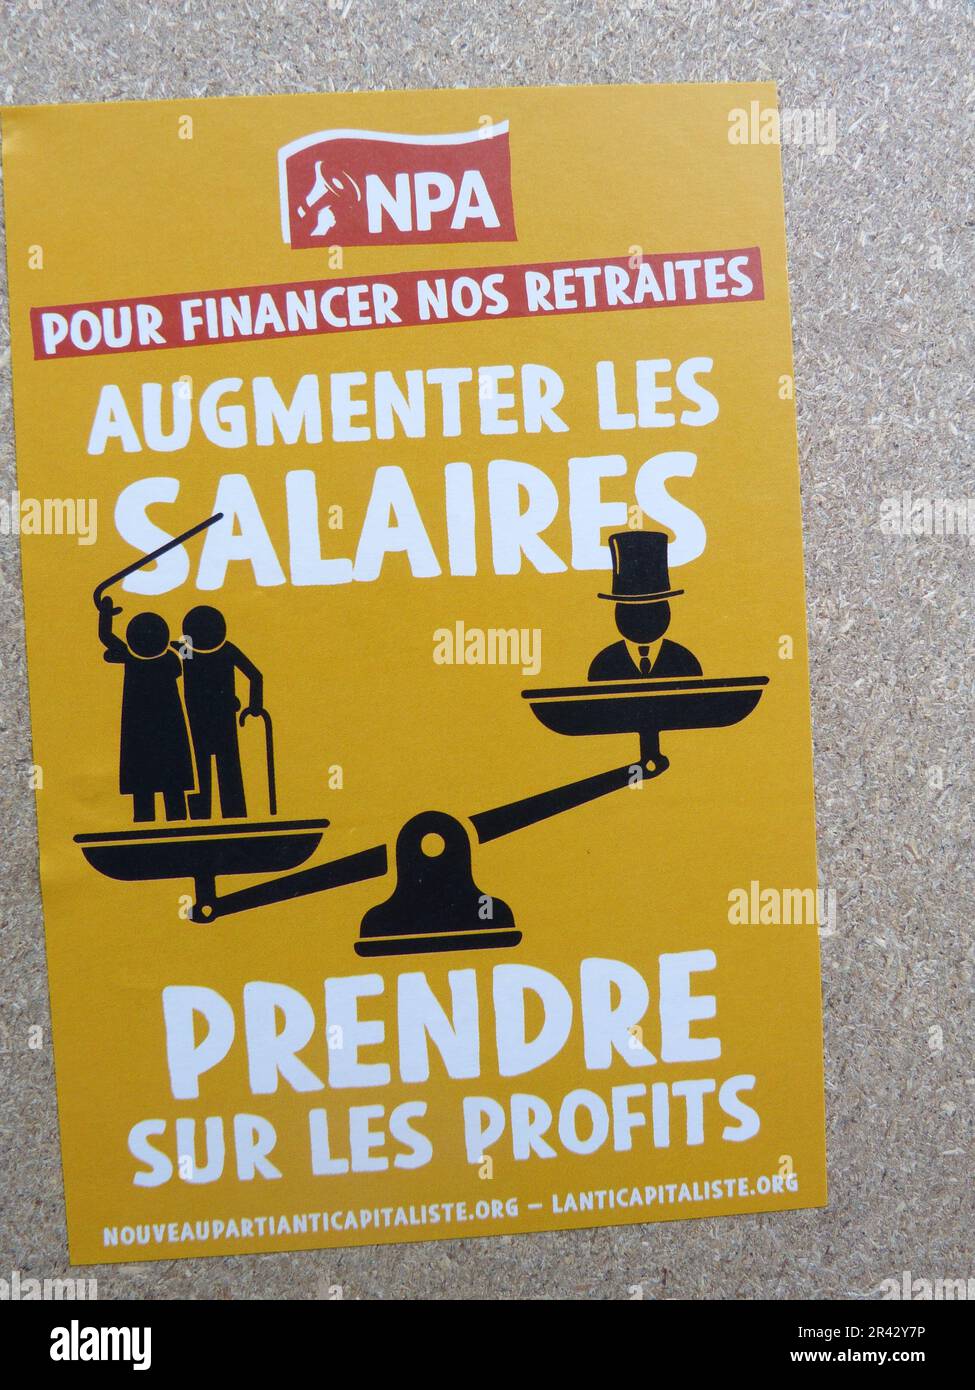 UNE AFFICHE NPA POUR FINANCER NOS RETRAITES AUGMENTER LES SALAIRES PRENDRE SUR LES PROFITS, PARIS, FRANKREICH Stockfoto